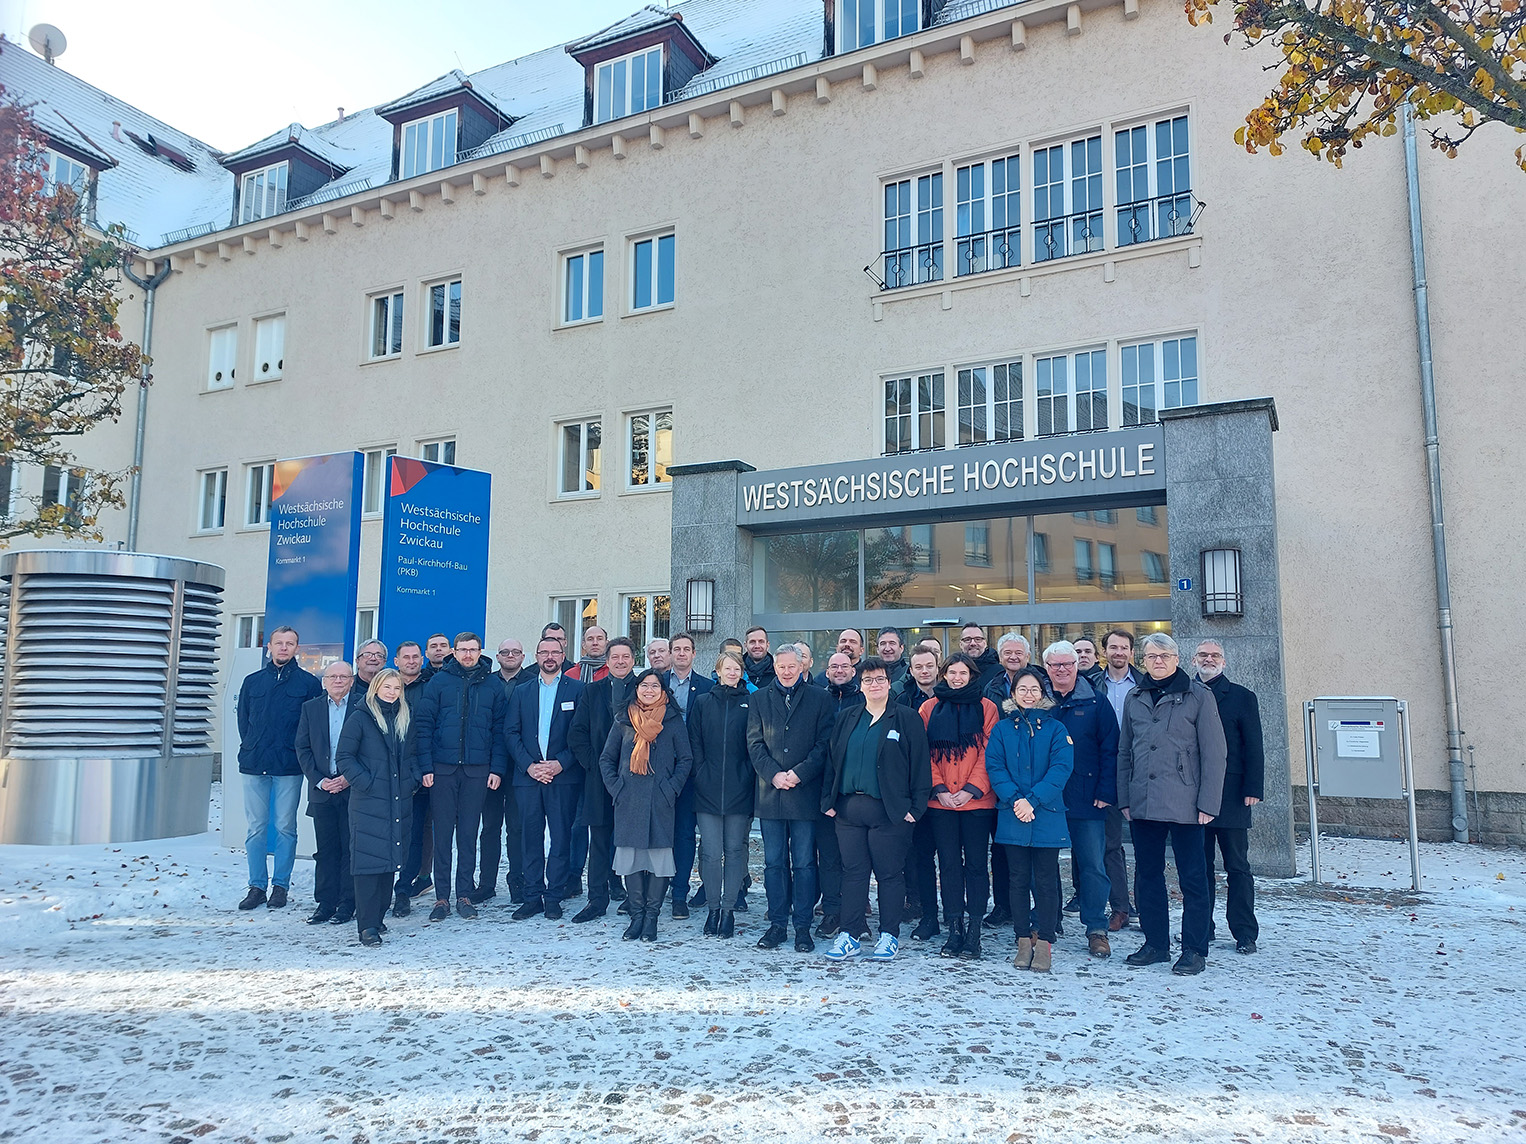 Gruppenfoto der Projektpartner vor dem Haupteingang der Westsächsischen Hochschule Zwickau (WHZ)